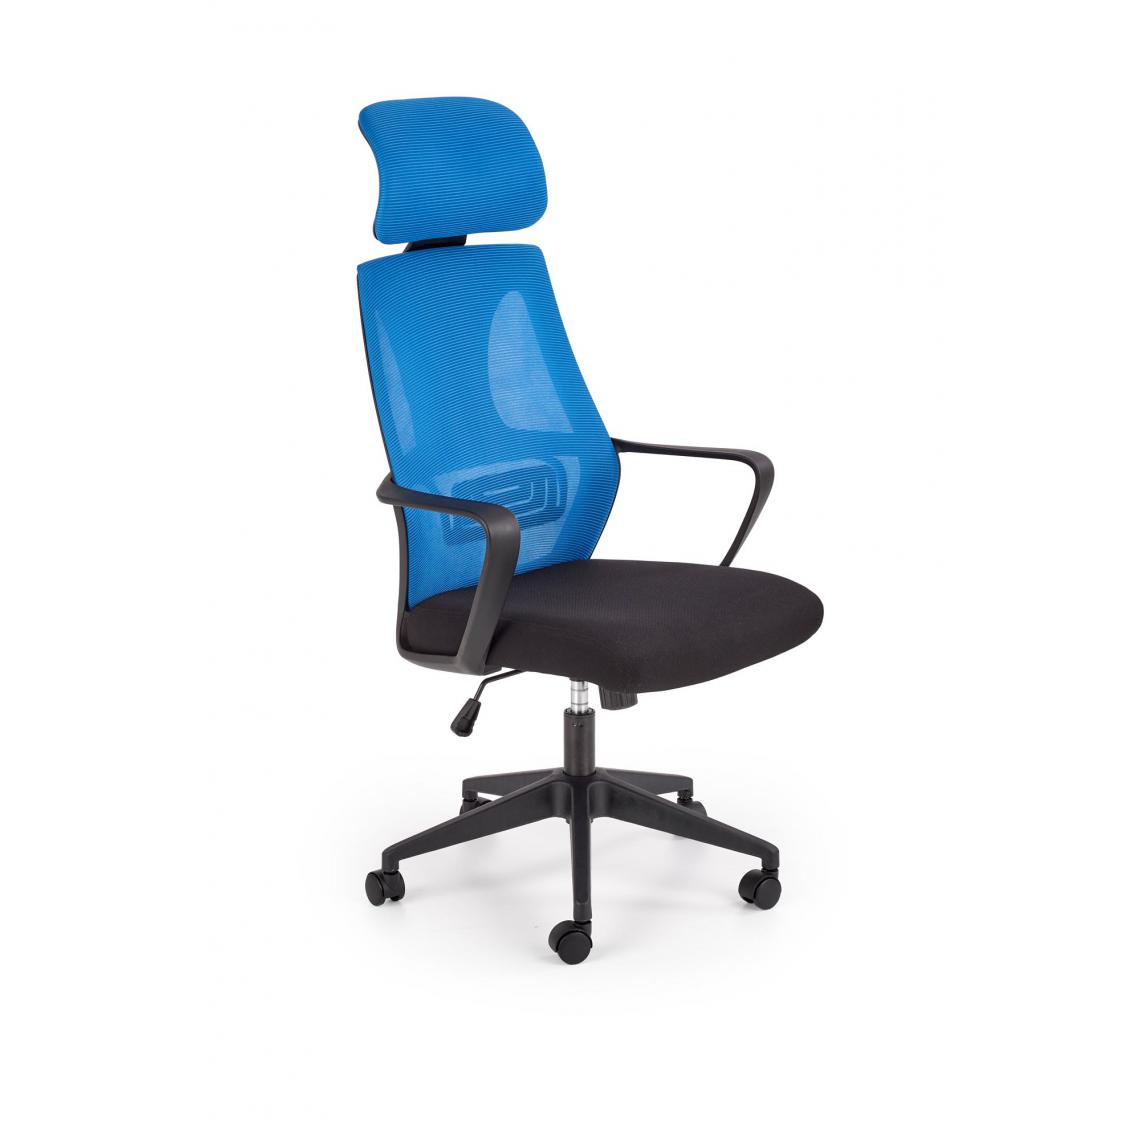 Hucoco - JAVIER - Fauteuil pivotant style moderne bureau/chambre - 116-122x64x60 - Verrouillage du dossier - Chaise de bureau - Bleu - Chaises